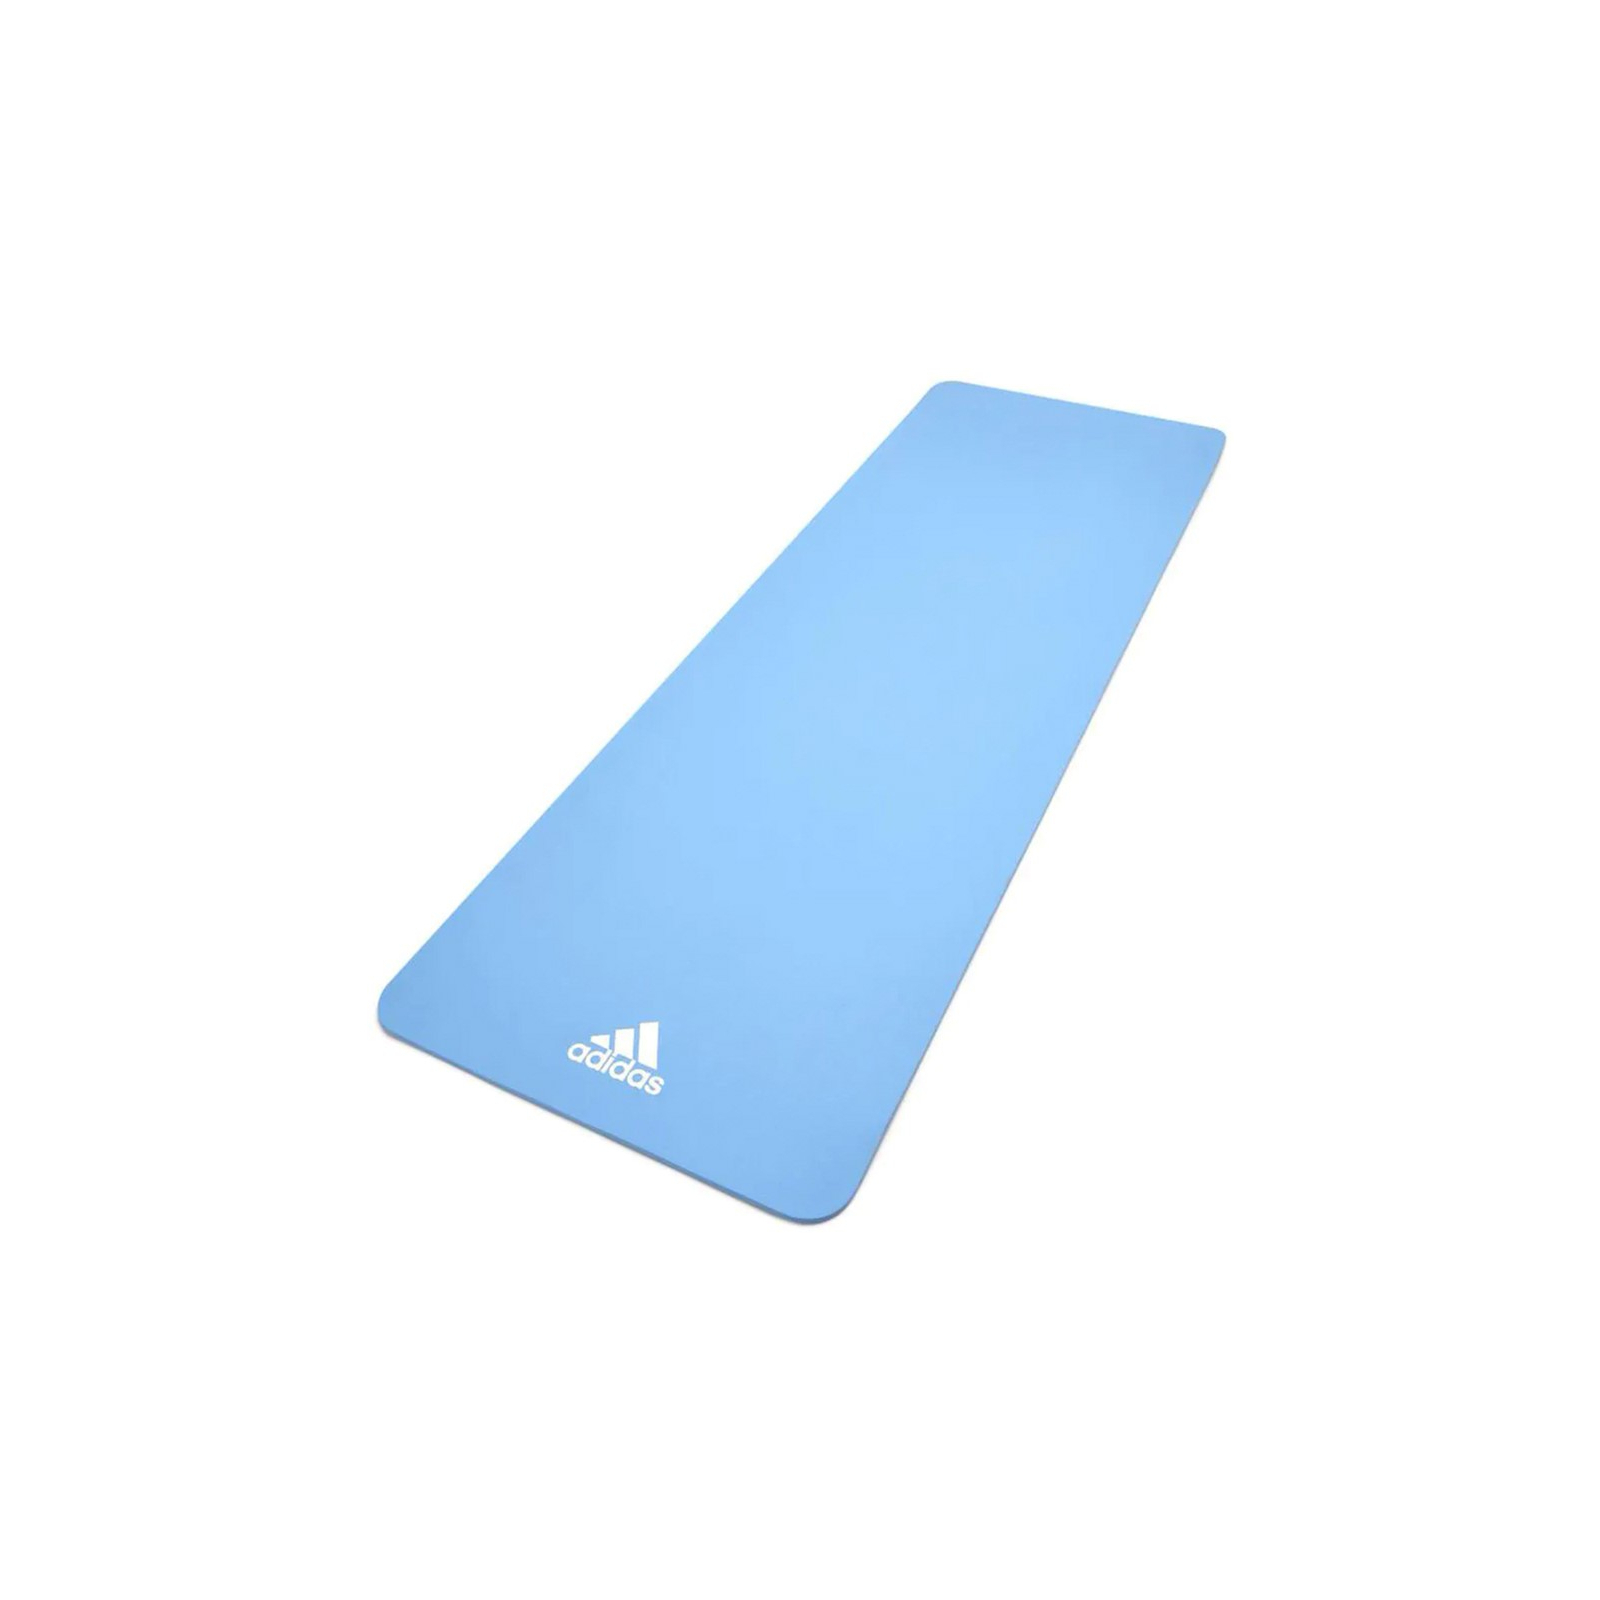 Килимок для йоги Adidas Yoga Mat Уні 176 х 61 х 0,8 см Блакитний (ADYG-10100GB)